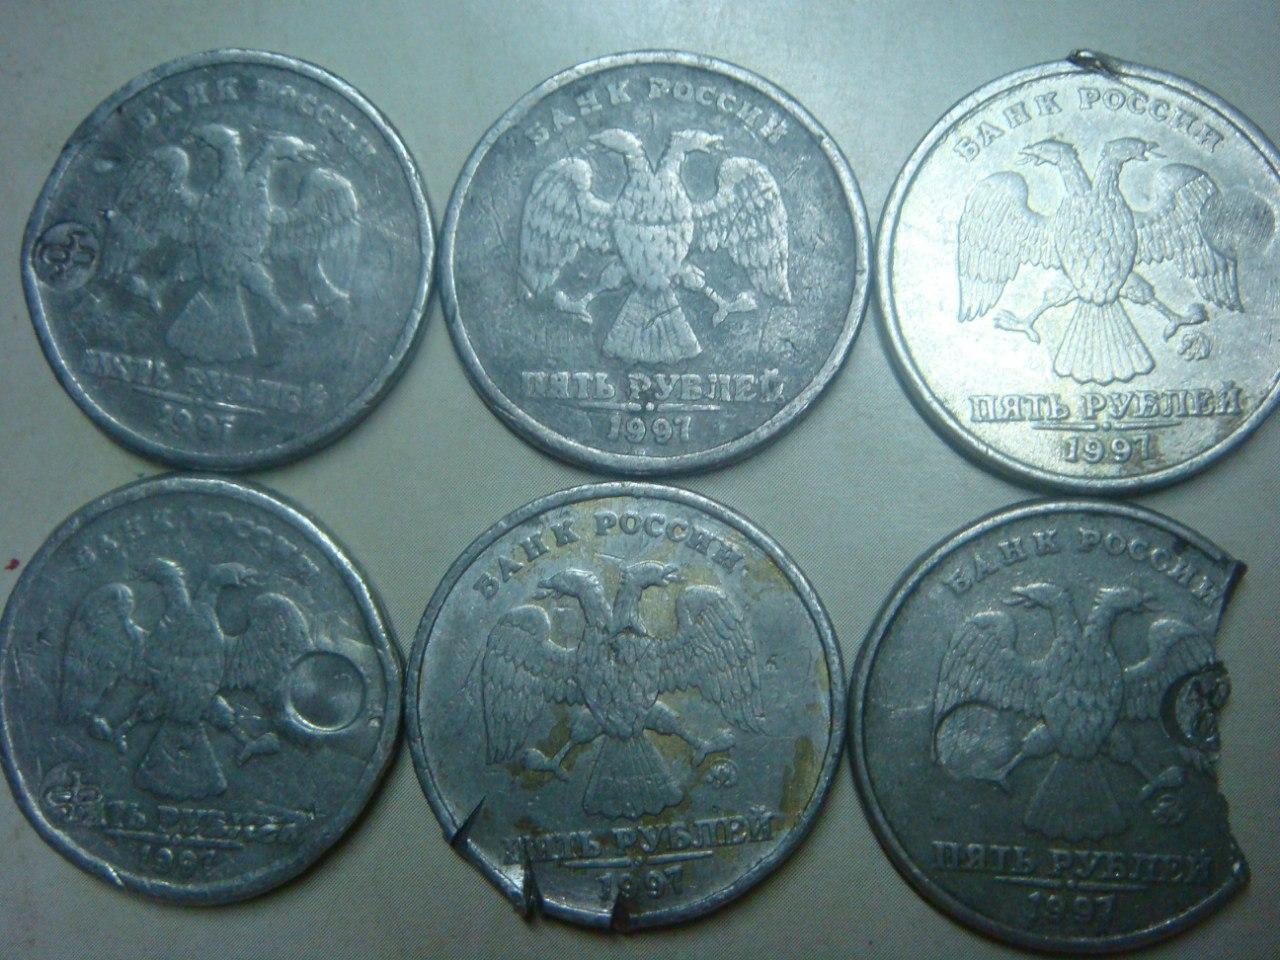 Пять рублей. Монеты 5 и 2 руб. 1997 года архив